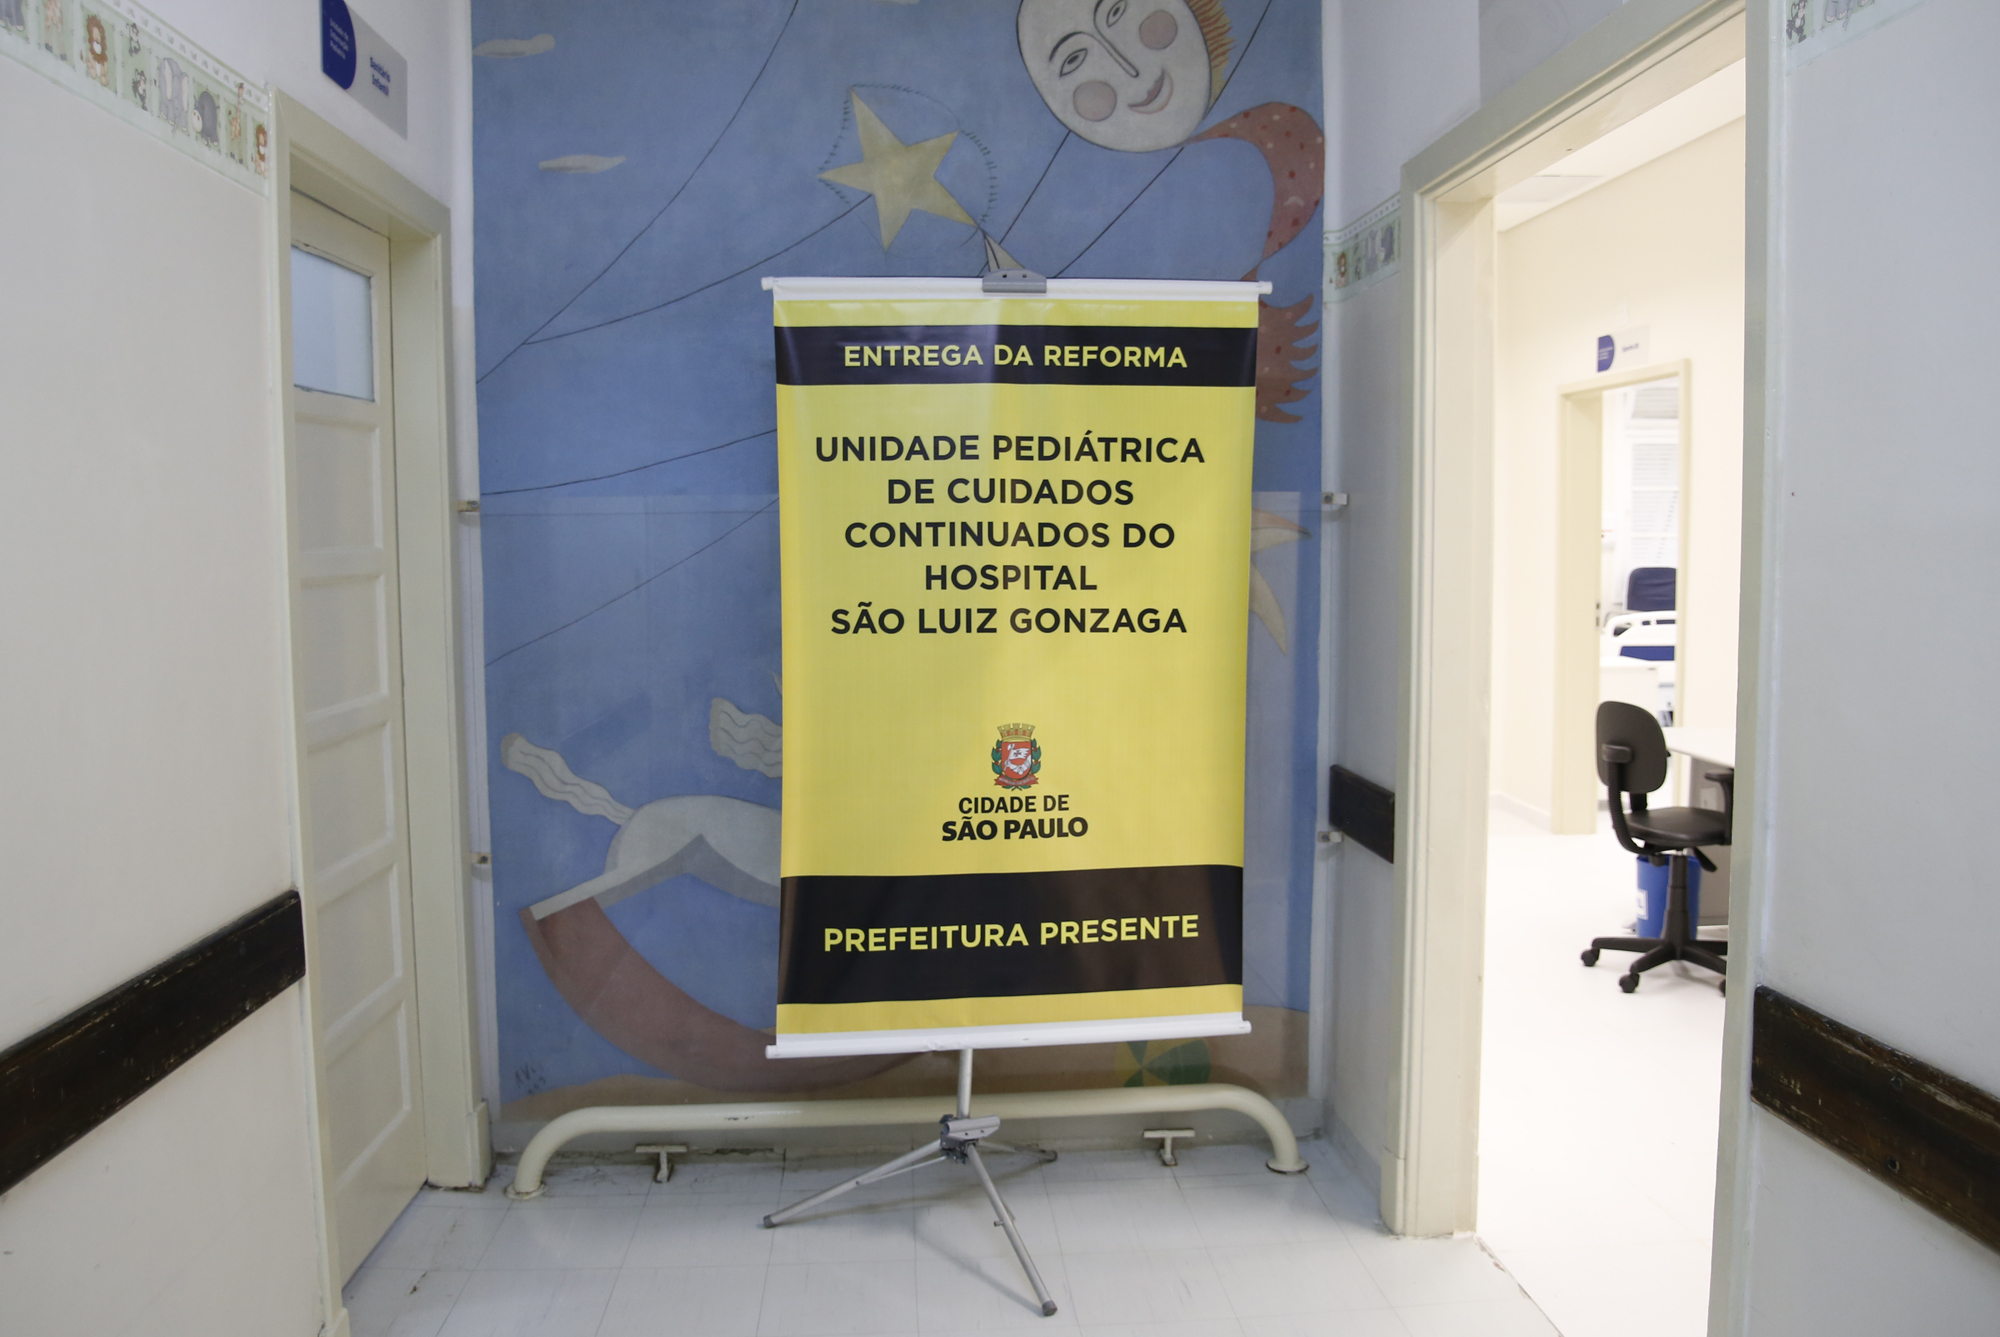 1194750-Entrega da Reforma na Unidade Pediátrica do Hospital São Luiz Gonzaga